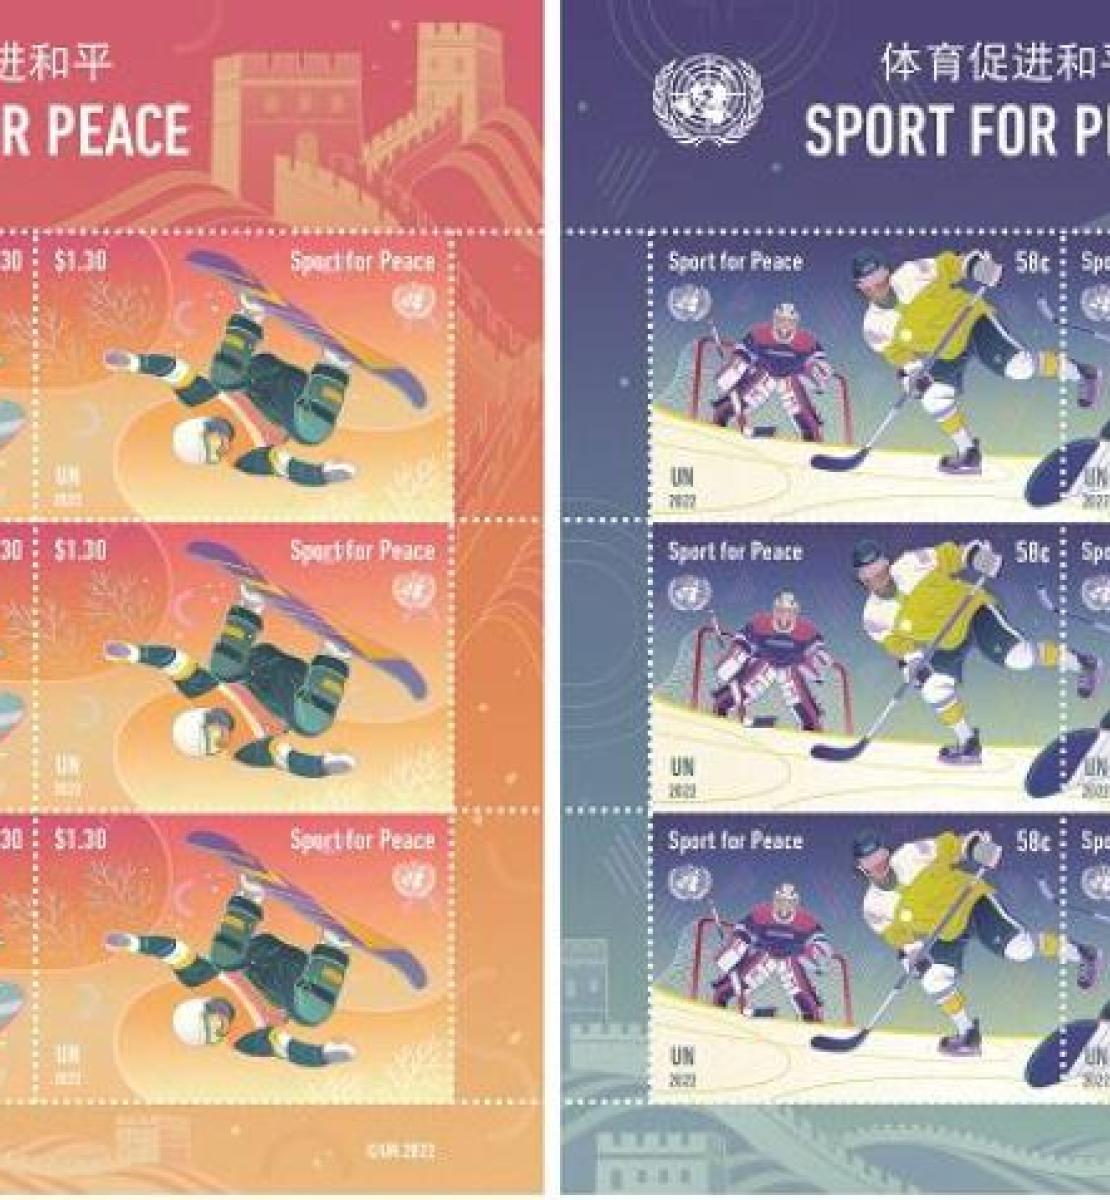 коллекция марок, выпущенная к зимней олимпиаде 2022 года